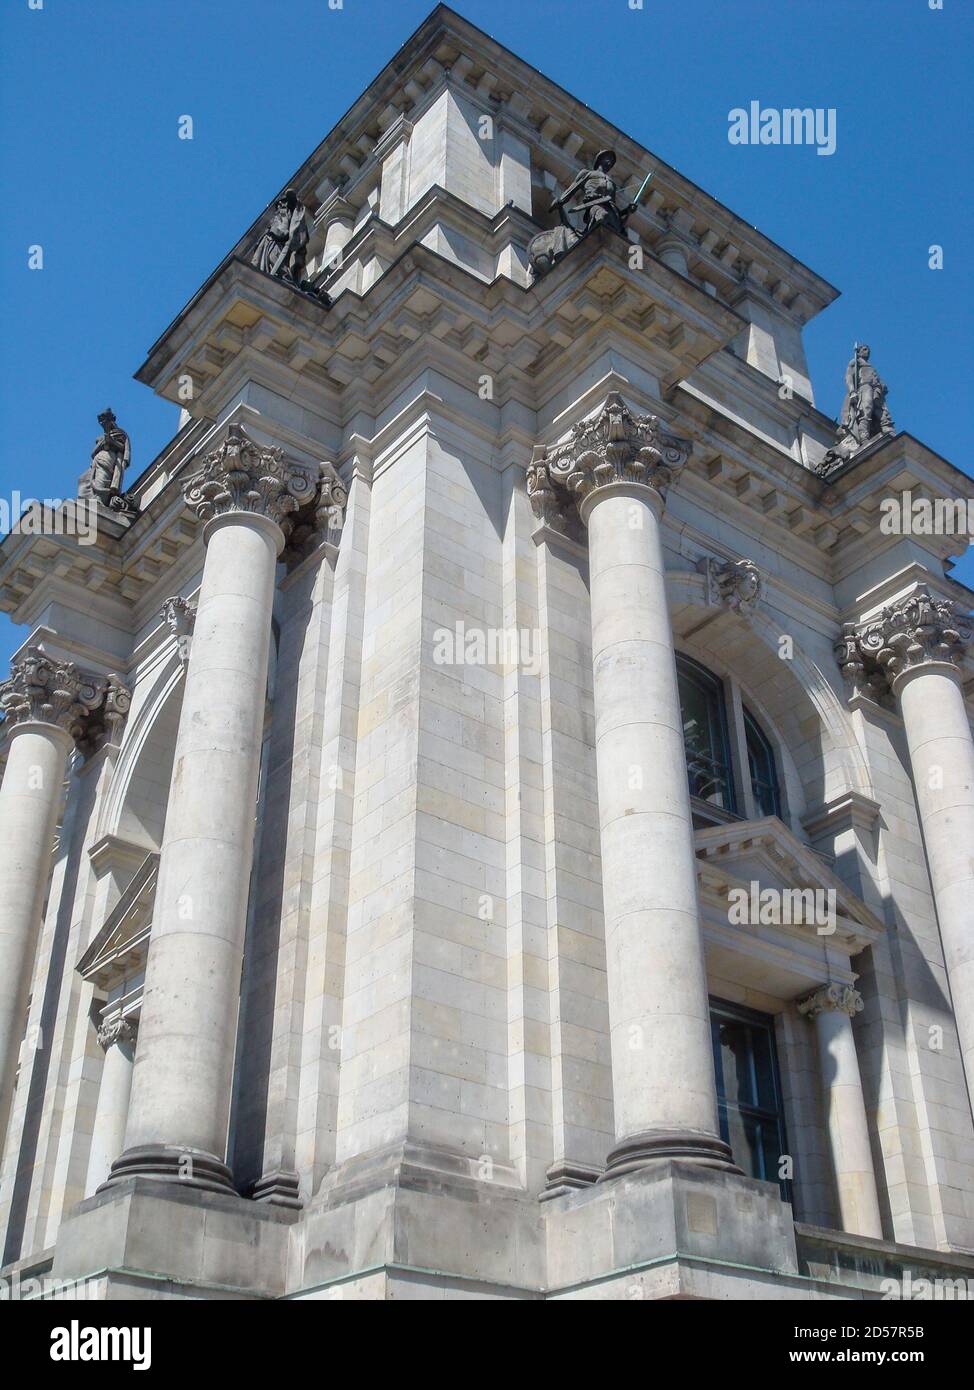 Bâtiments historiques à Berlin: Bundestag le Parlement fédéral allemand Banque D'Images